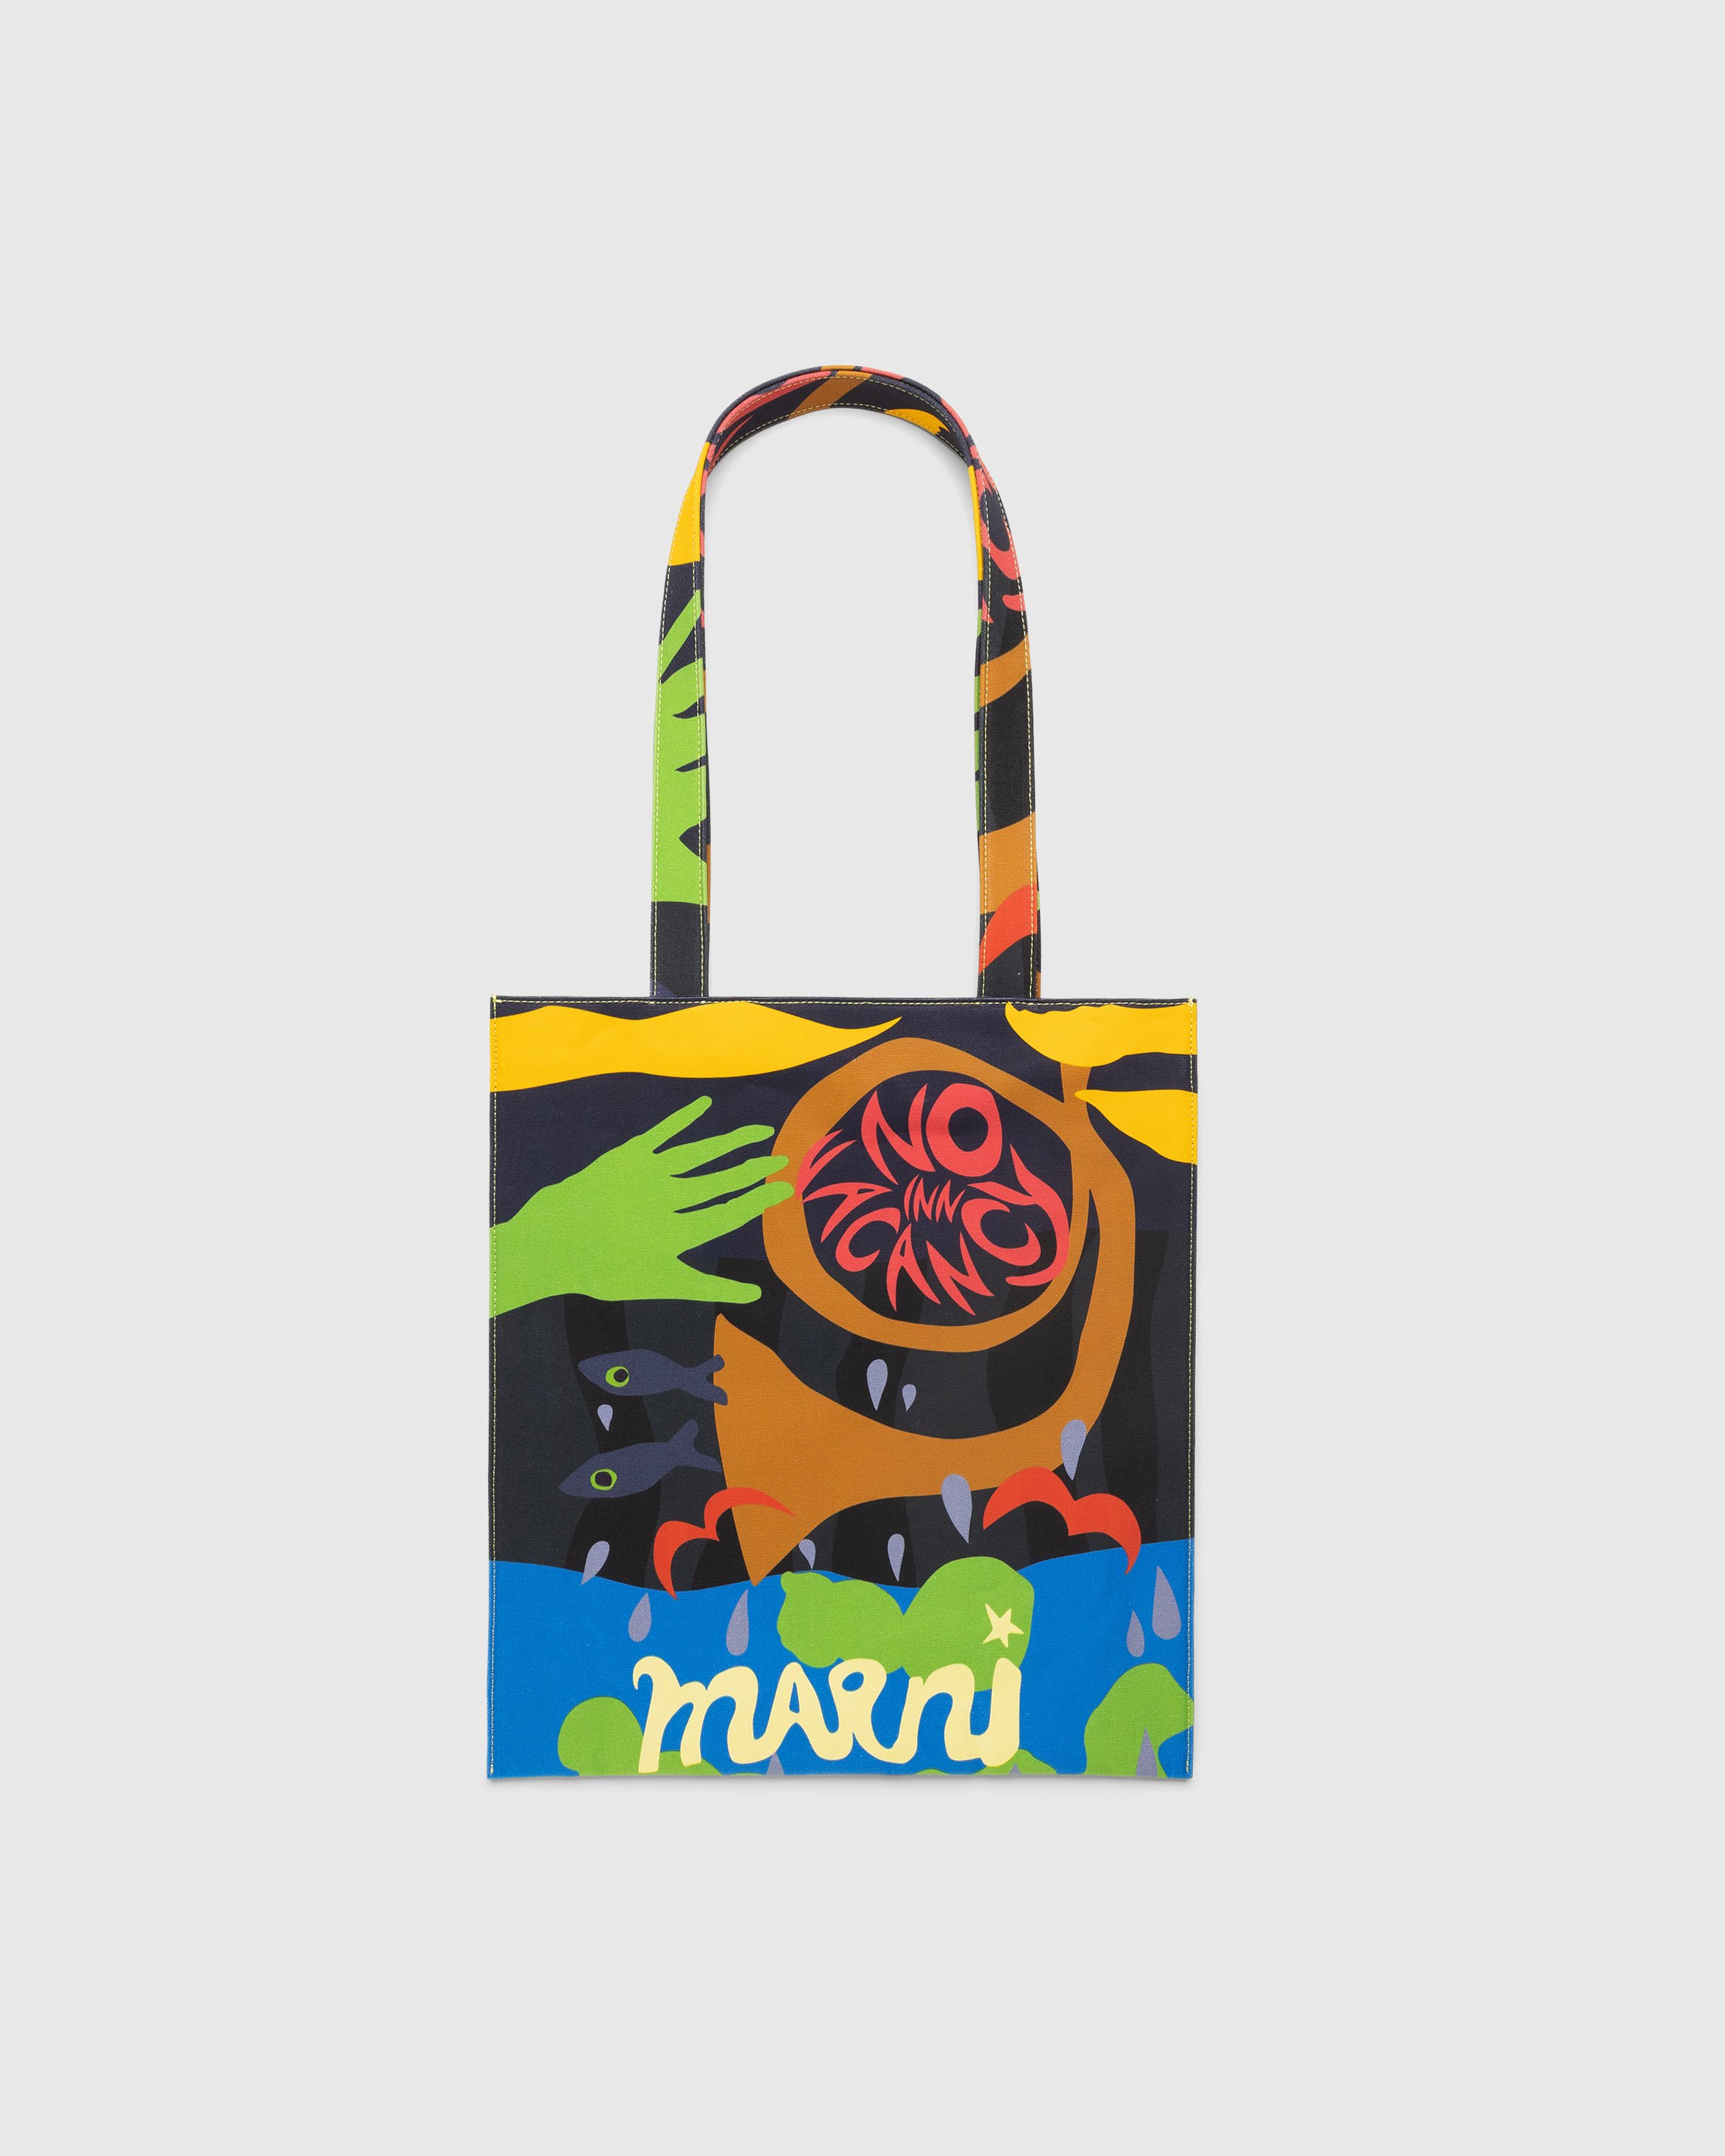 Marni x No Vacancy Inn - Printed Tote Bag Multicolour - Accessories - Multi - Image 1